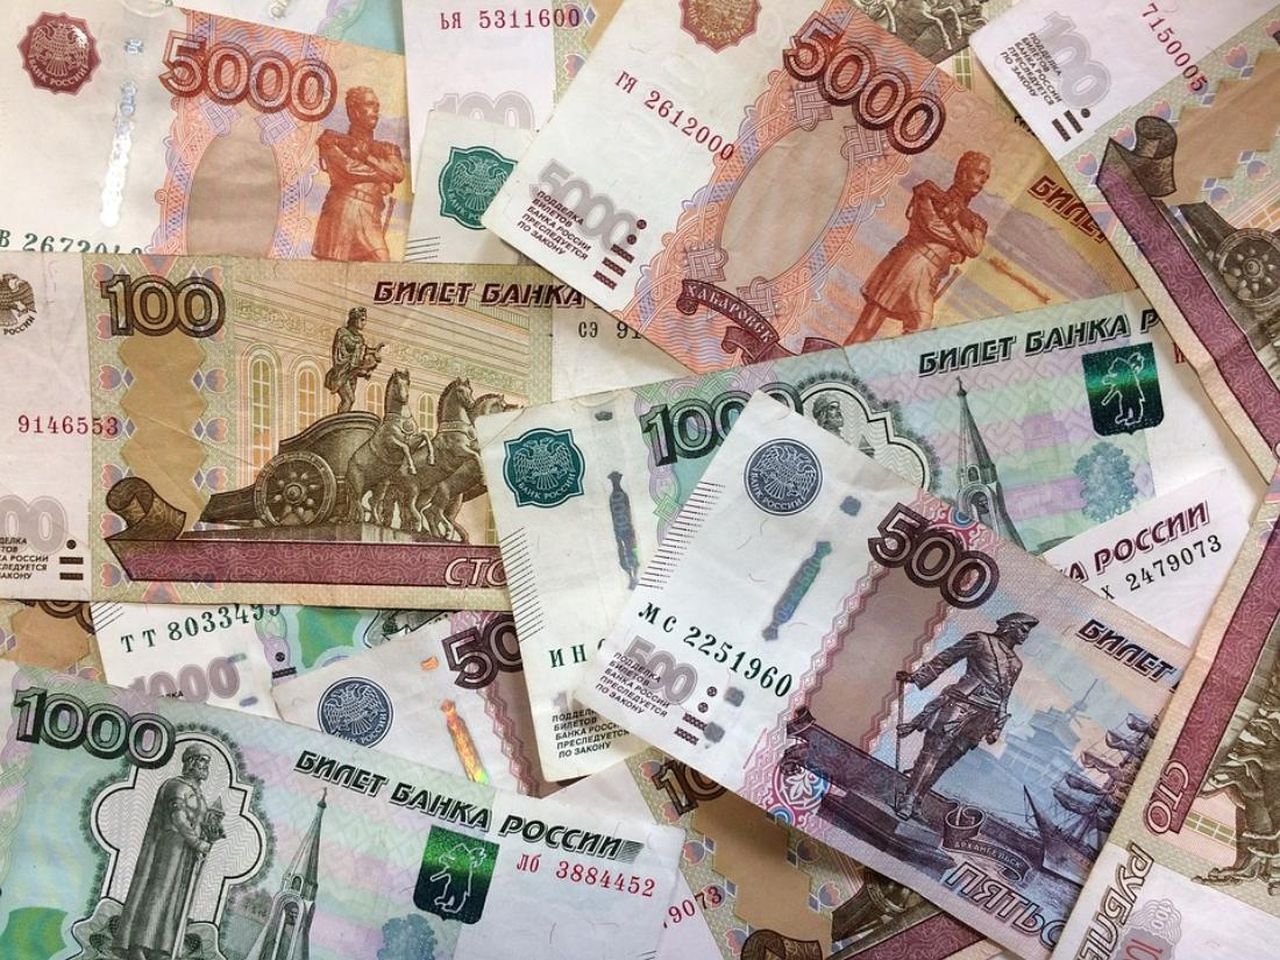 Глава Госзнака высказался за изменение дизайна российских банкнот.